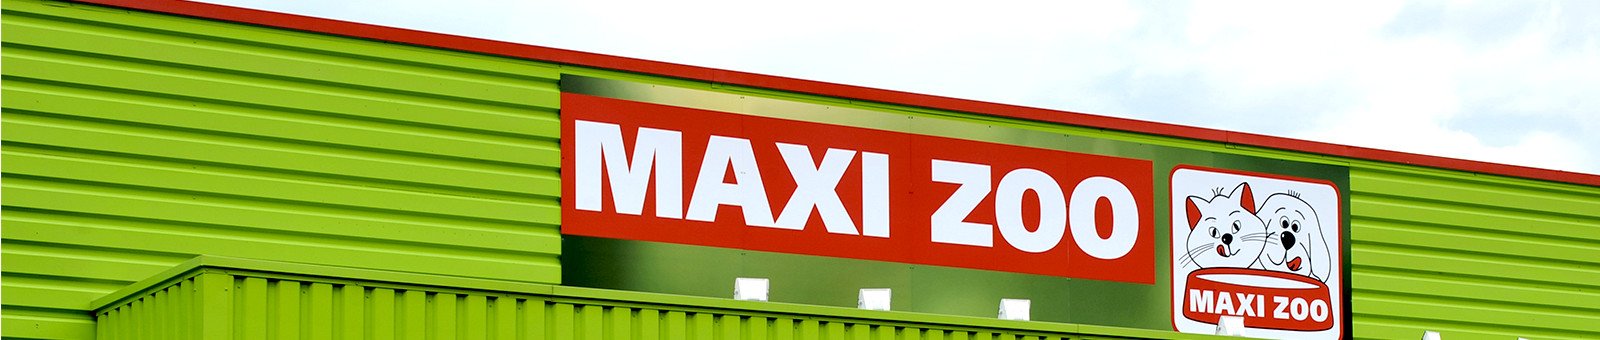 Maxi Zoo, le magasin pour animaux le plus attractif qui soit